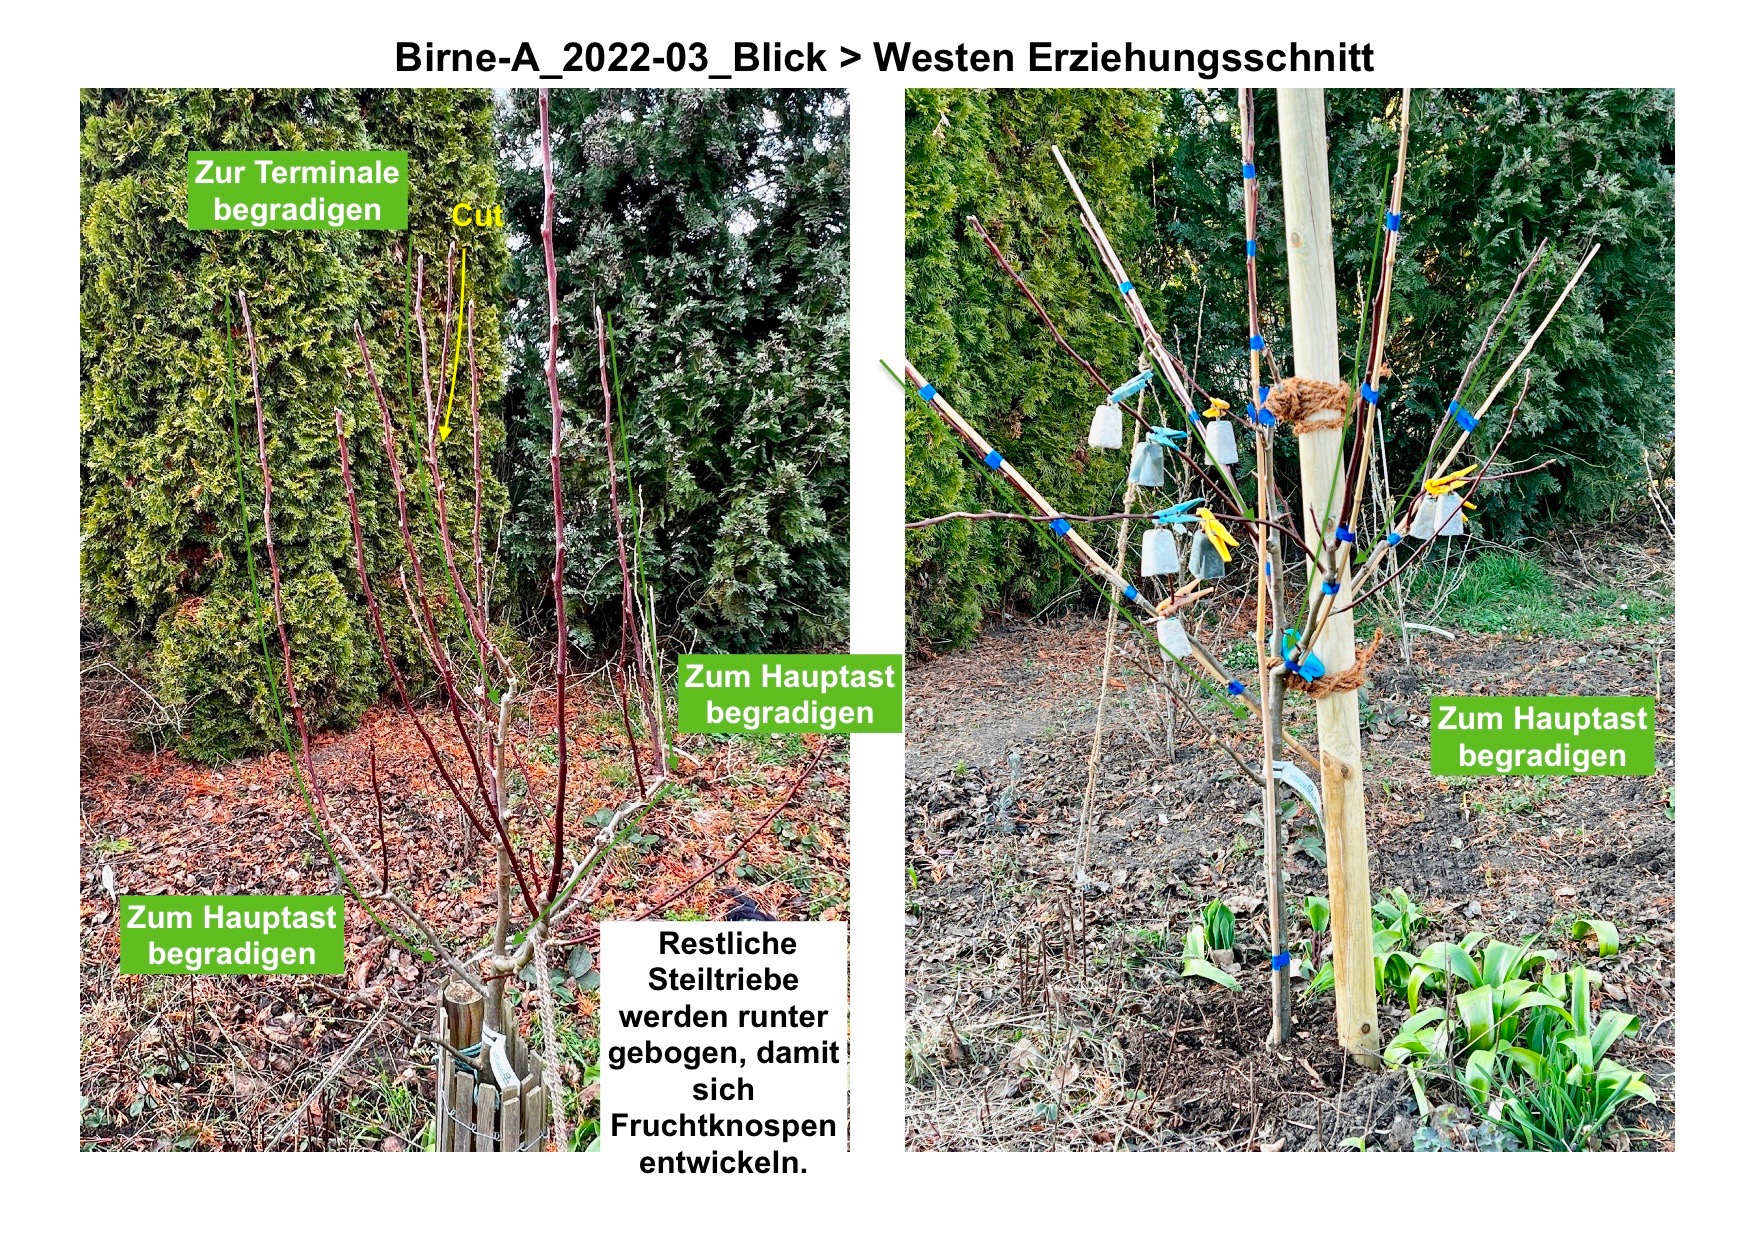 Birne-A_Erziehungsschnitt2022-03_ Blick > Westen.jpg